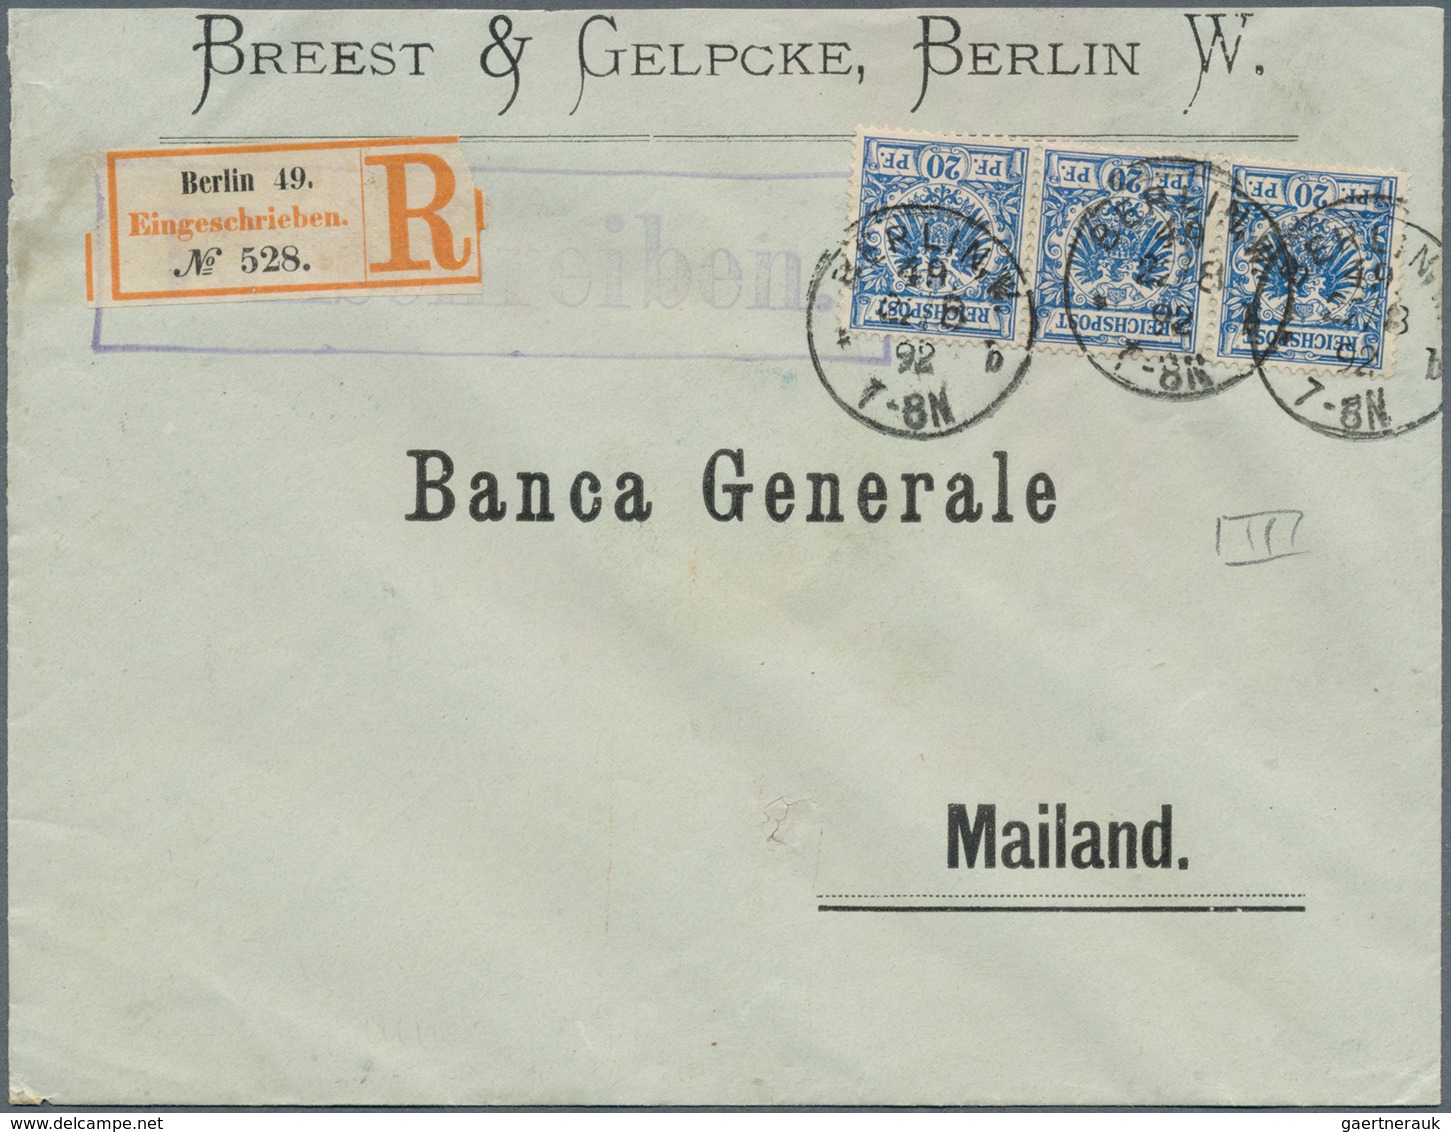 31533 Deutsches Reich - Krone / Adler: 1889/1902, interessanter Posten von ca. 140 Belegen Krone/Adler mit